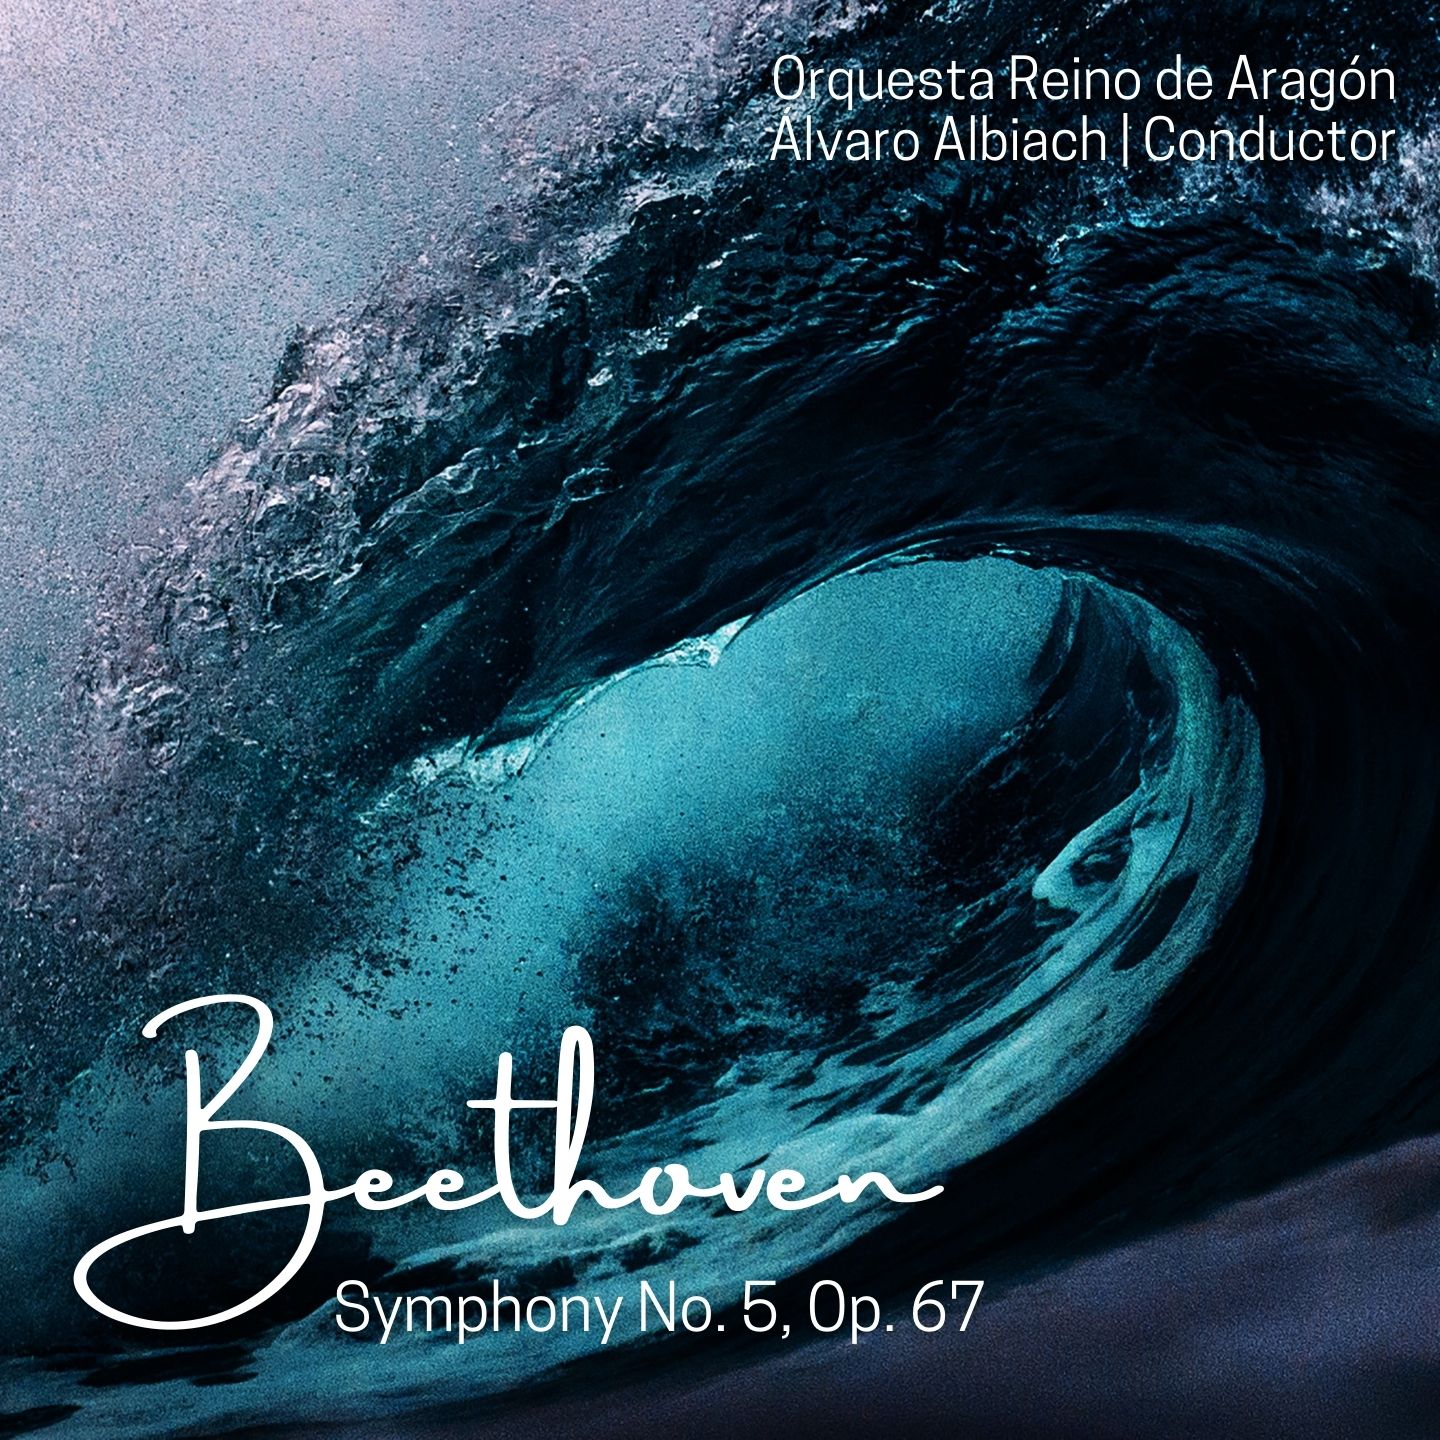 Beethoven: Symphony No. 5, Op. 67